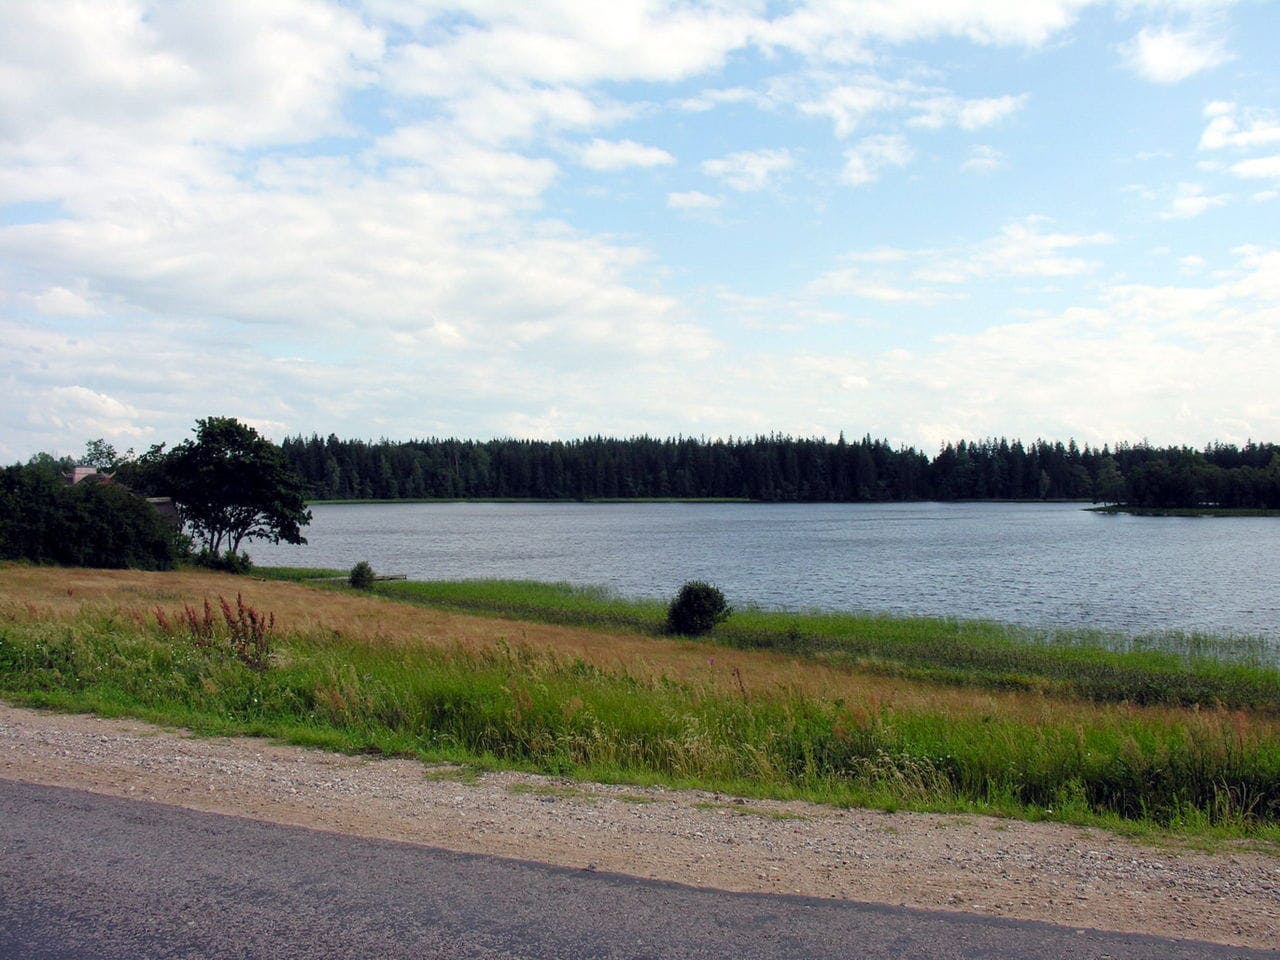 Žemaitija National Park - Lake